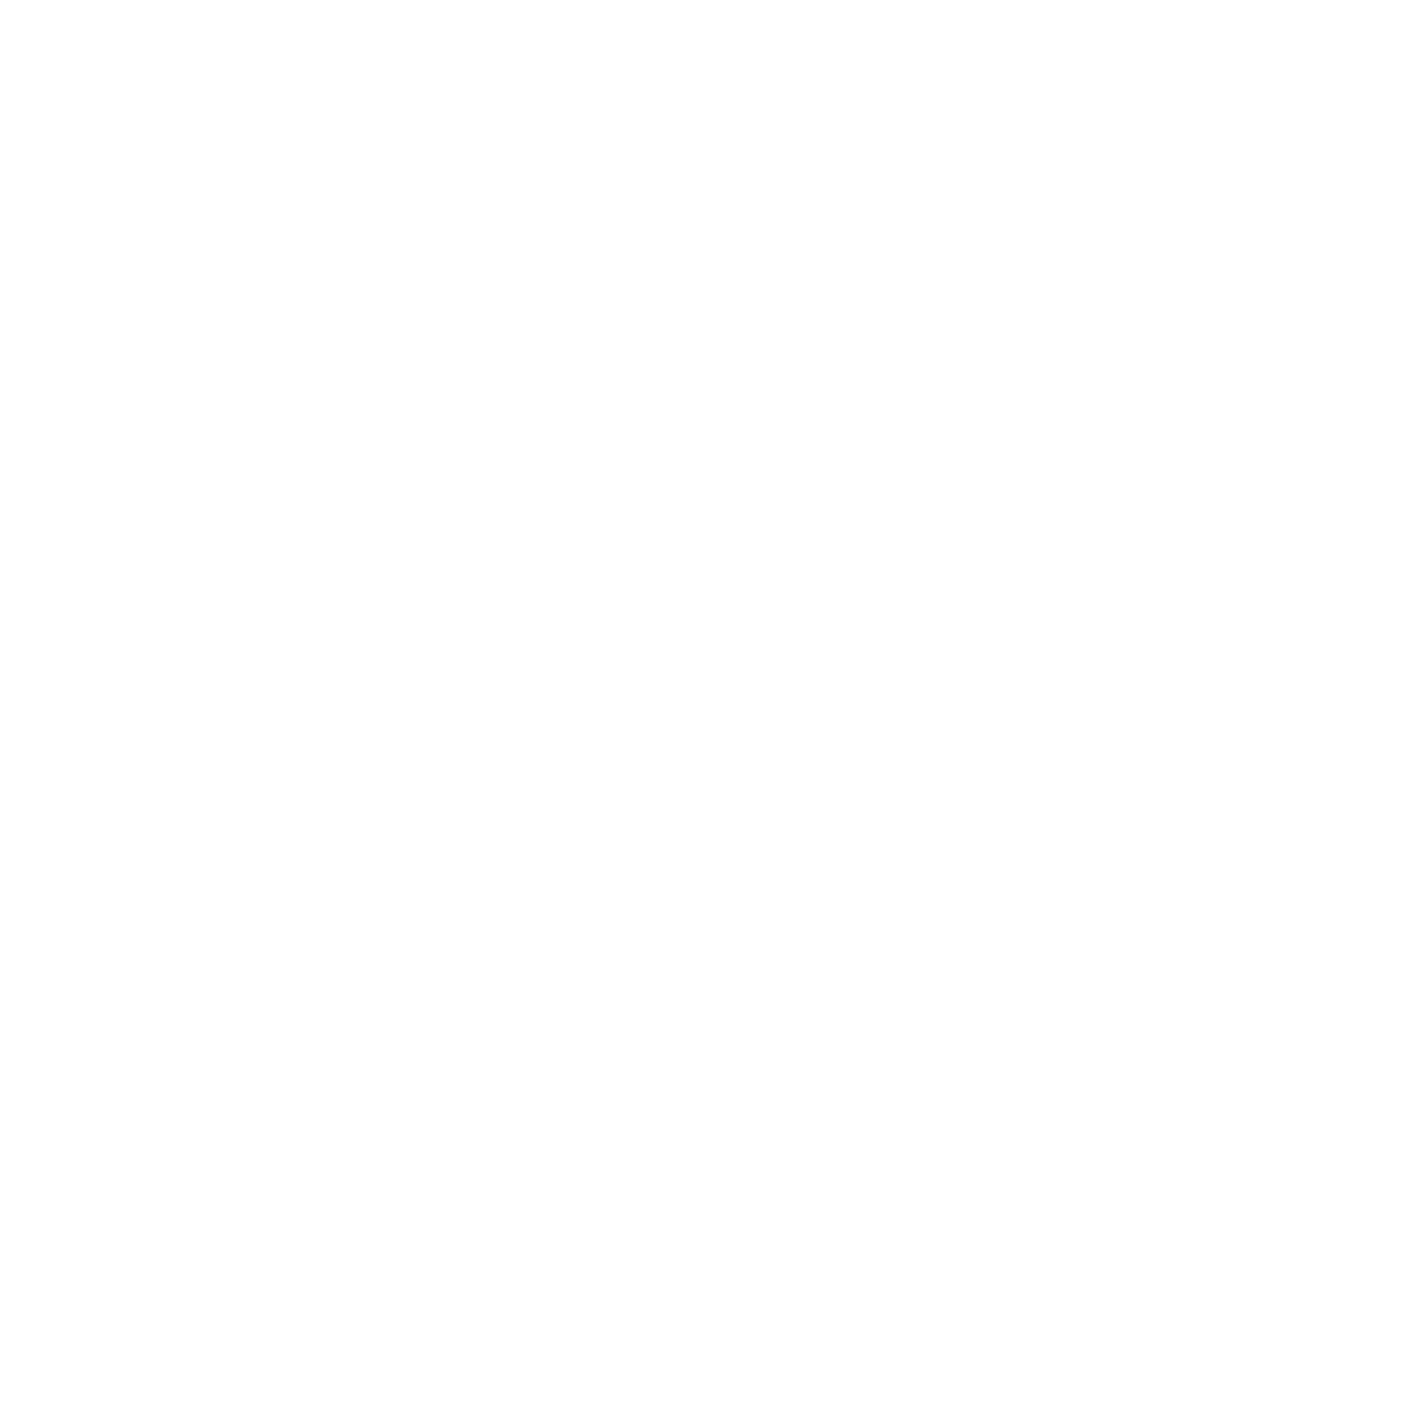 R|M BRANDING